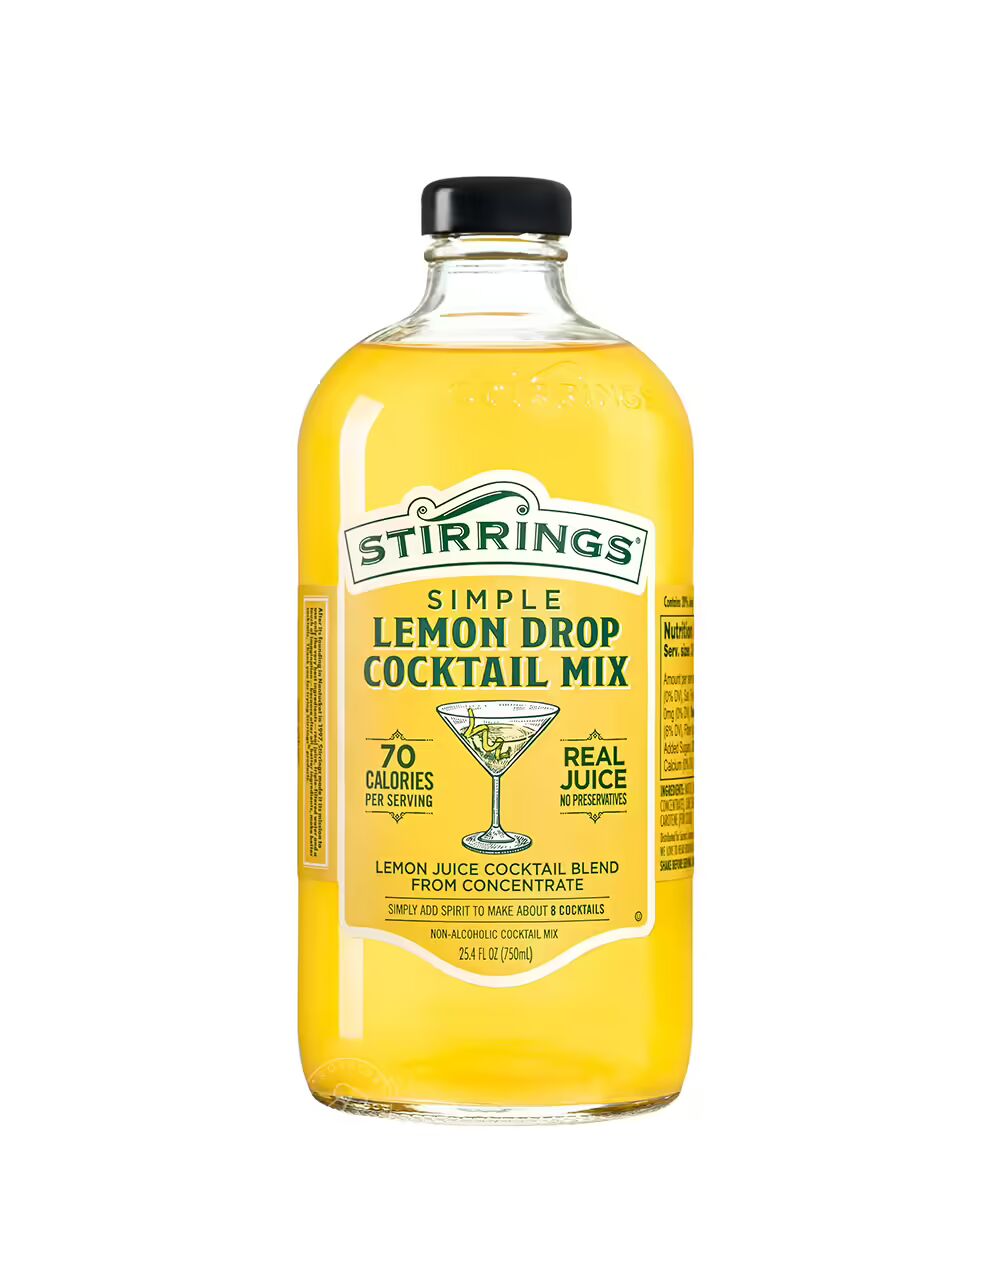 Stirrings Simple Lemon Drop Cocktail mix